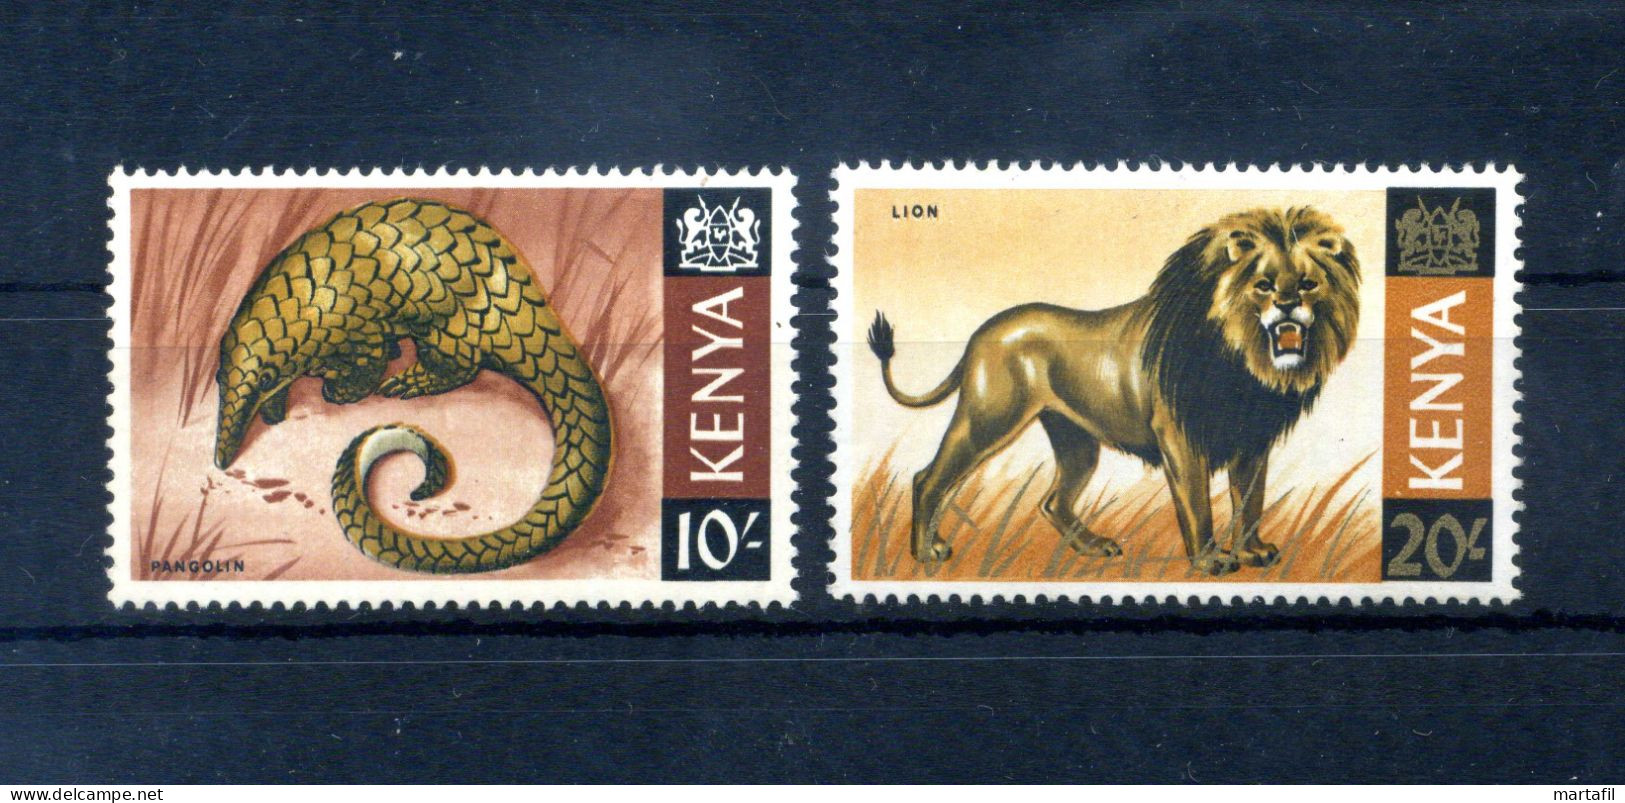 1966-69 KENIA Kenya N.32-33 MNH ** Alti Valori, 10s & 20s, Lion And - Kenya (1963-...)